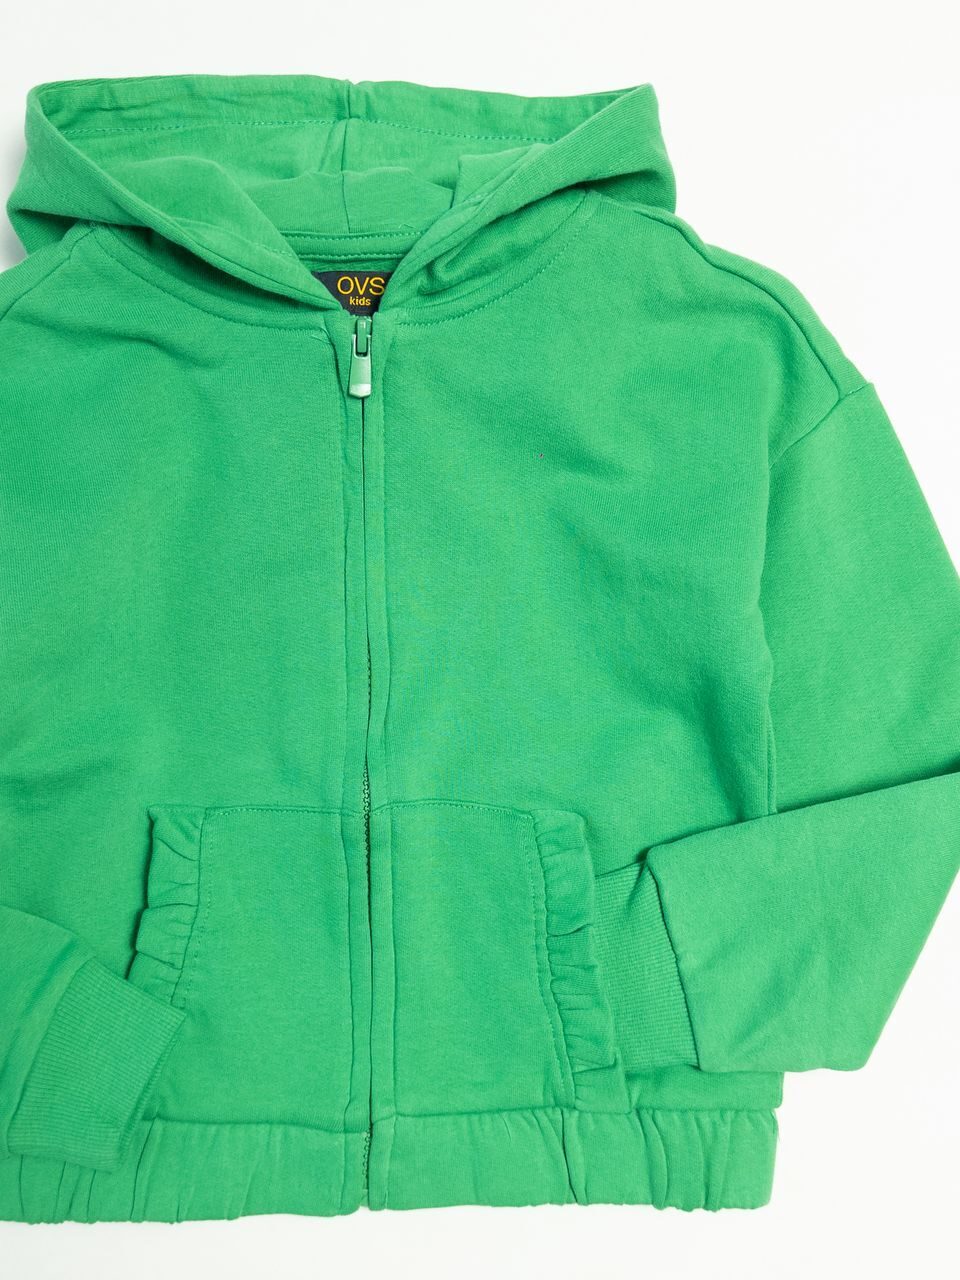 Толстовка для девочки со спущенными плечами с начесом цвет зеленый на рост 122 см  6-7 лет  OVS